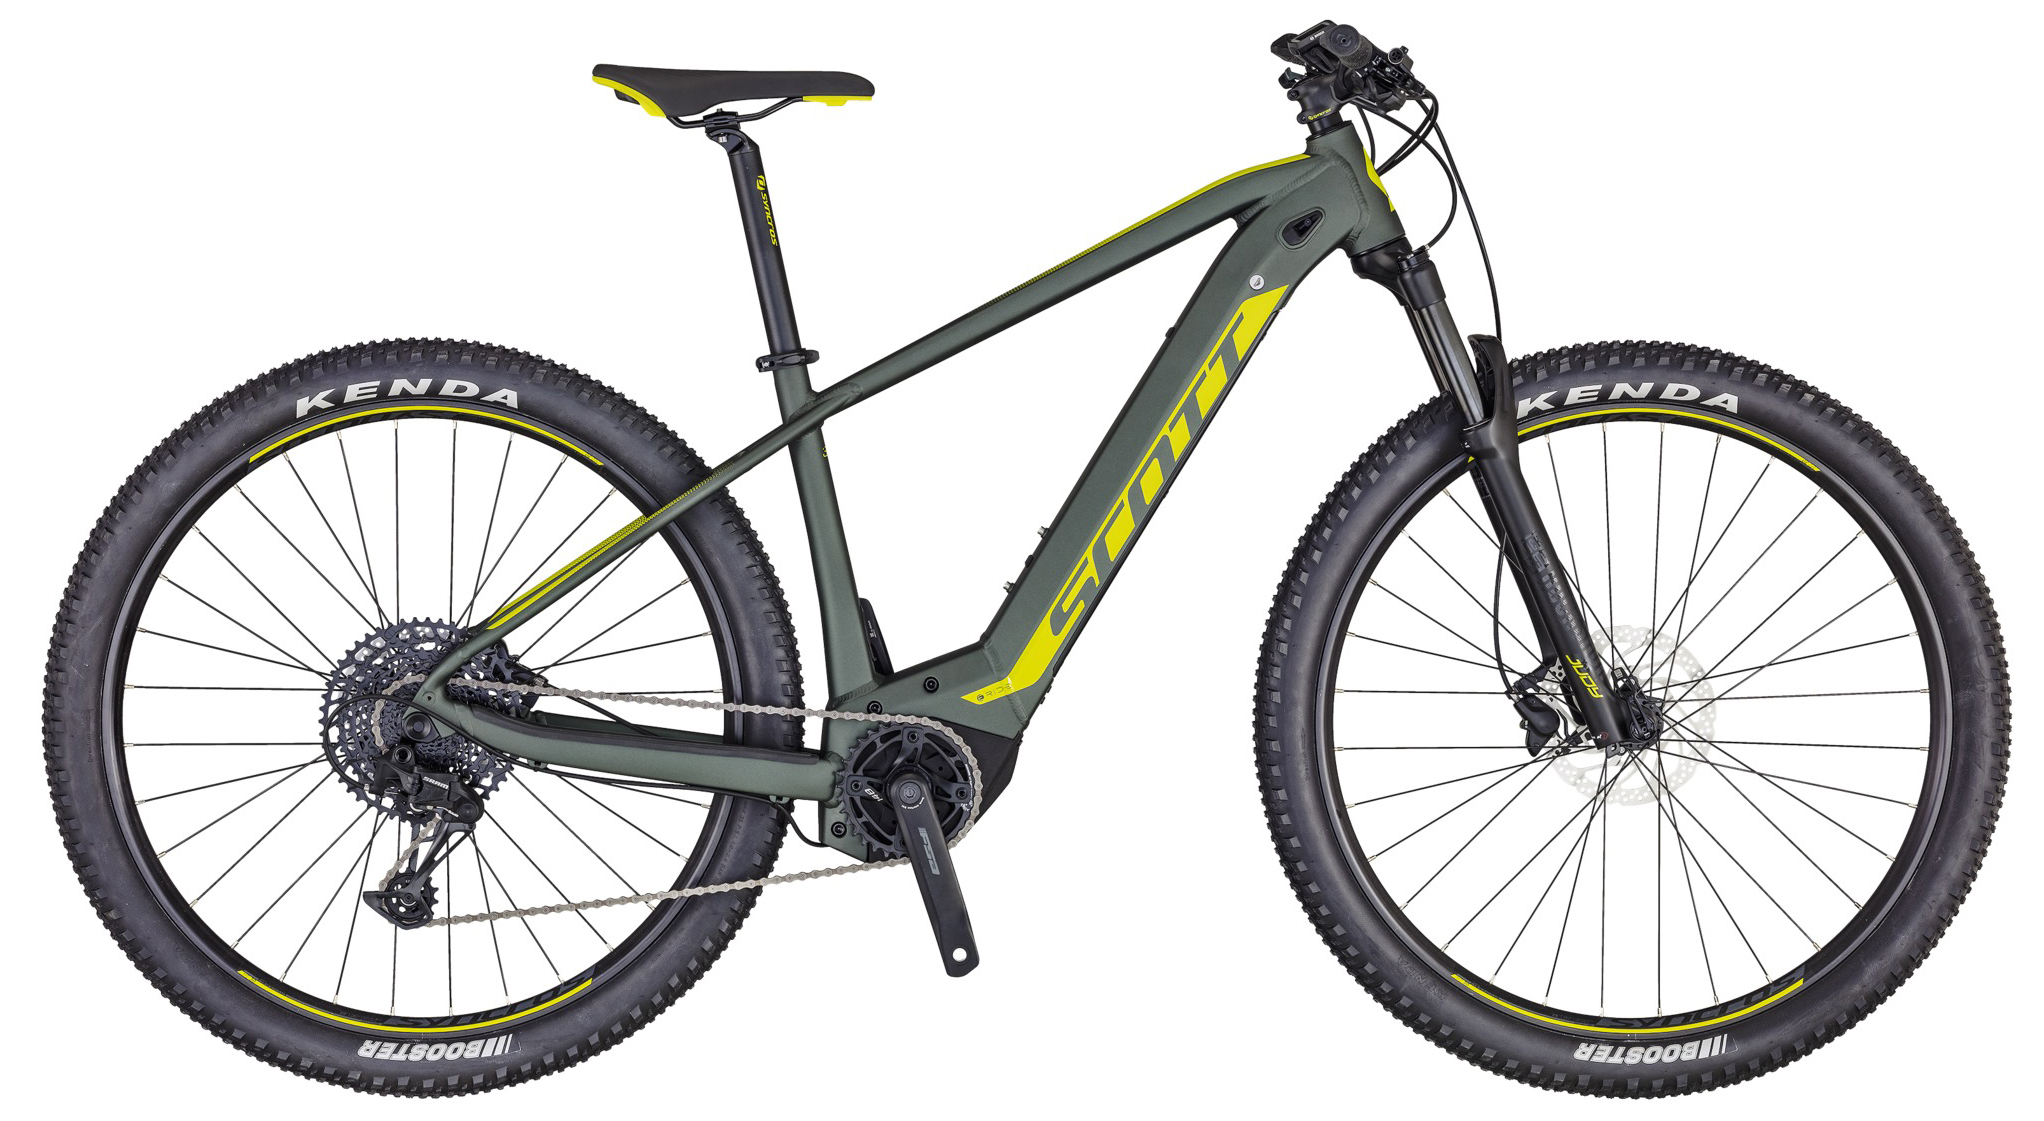  Отзывы о Электровелосипеде Scott Aspect eRide 930 2020